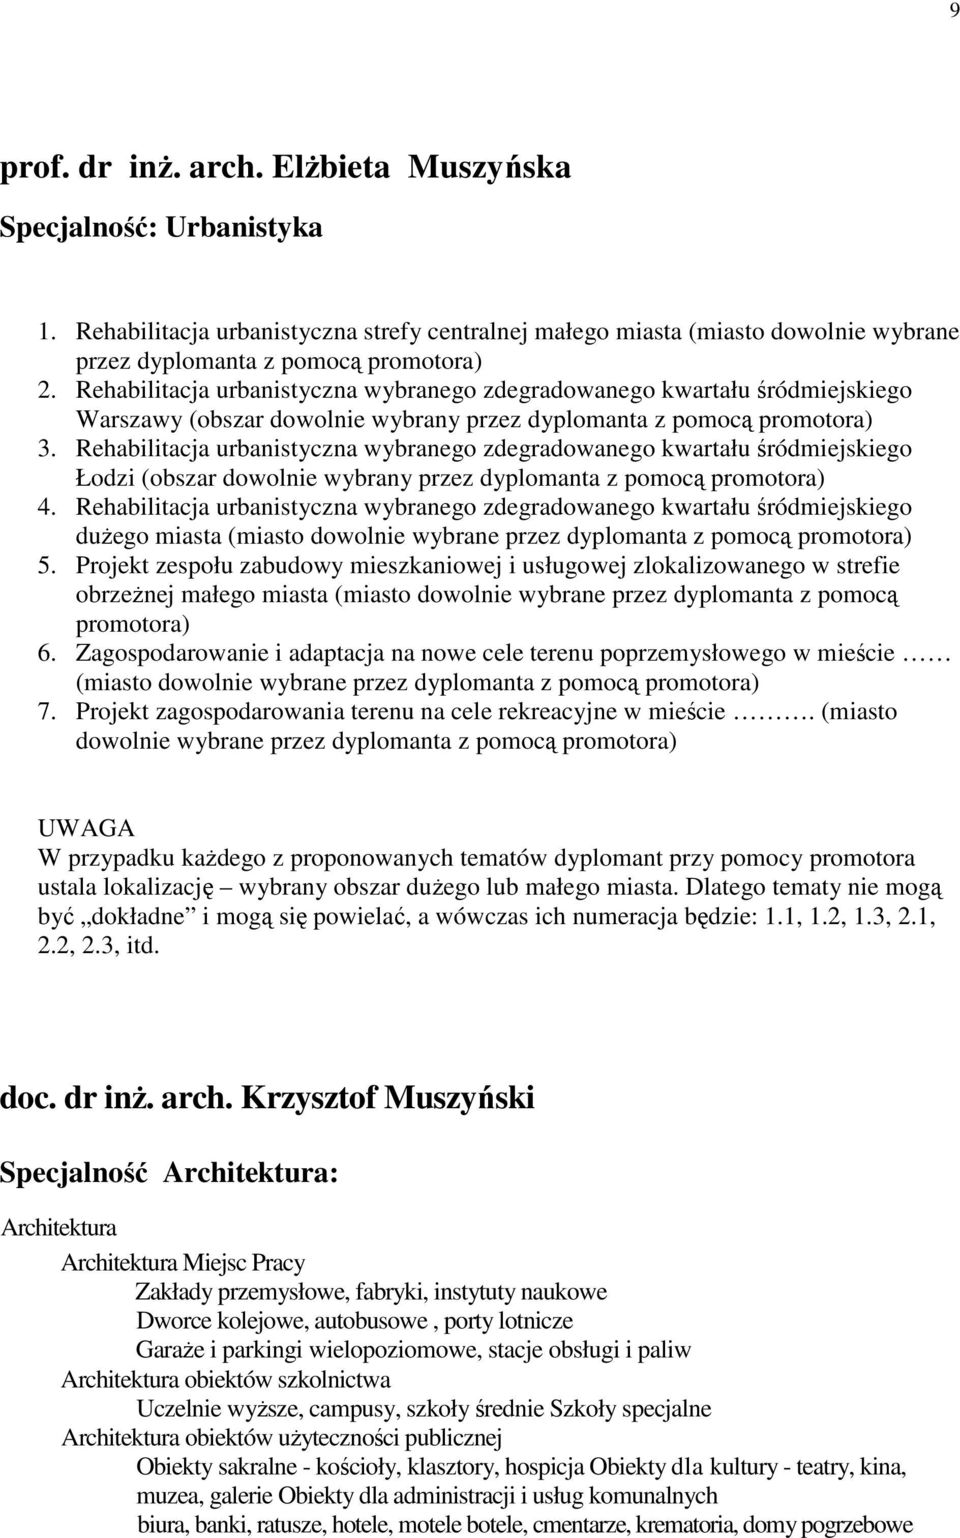 Rehabilitacja urbanistyczna wybranego zdegradowanego kwartału śródmiejskiego Łodzi (obszar dowolnie wybrany przez dyplomanta z pomocą promotora) 4.